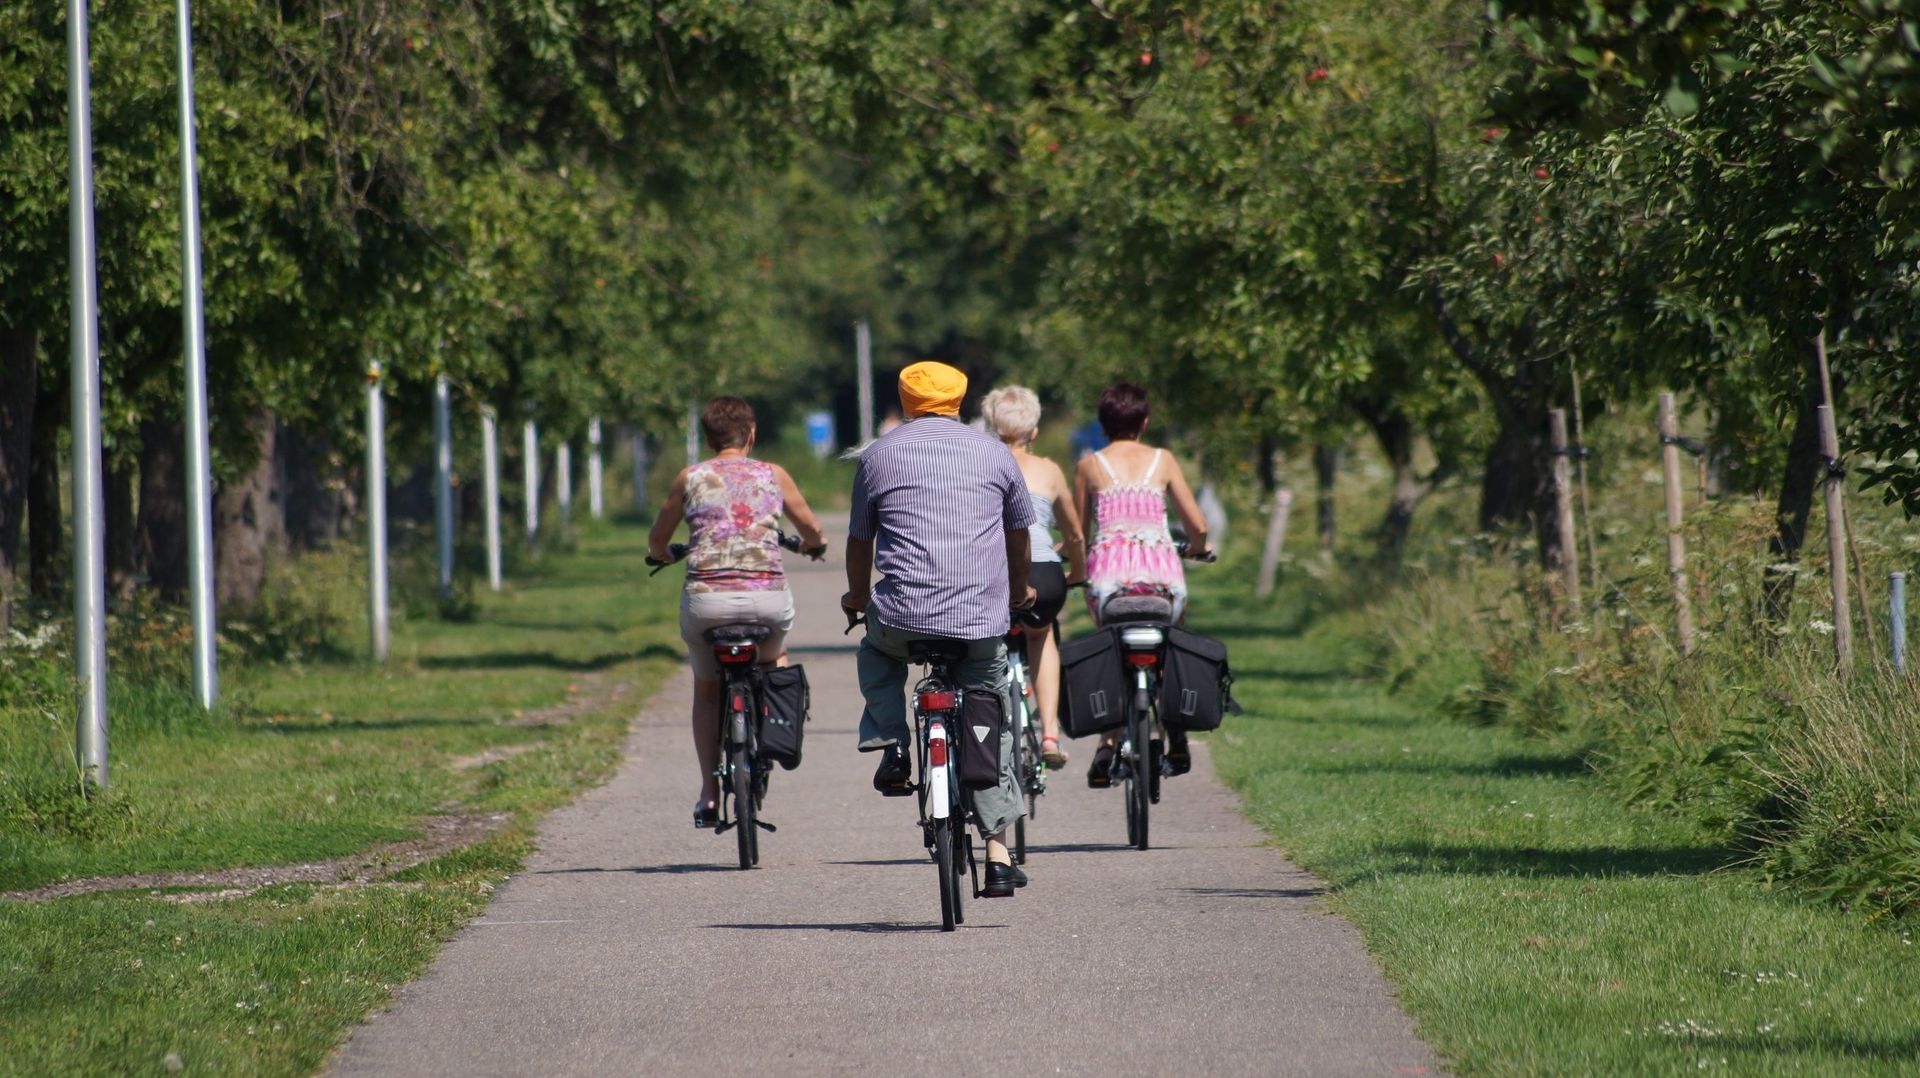 Plus de mobilité douce en Wallonie grâce au projet "Communes pilotes Wallonie cyclable" !